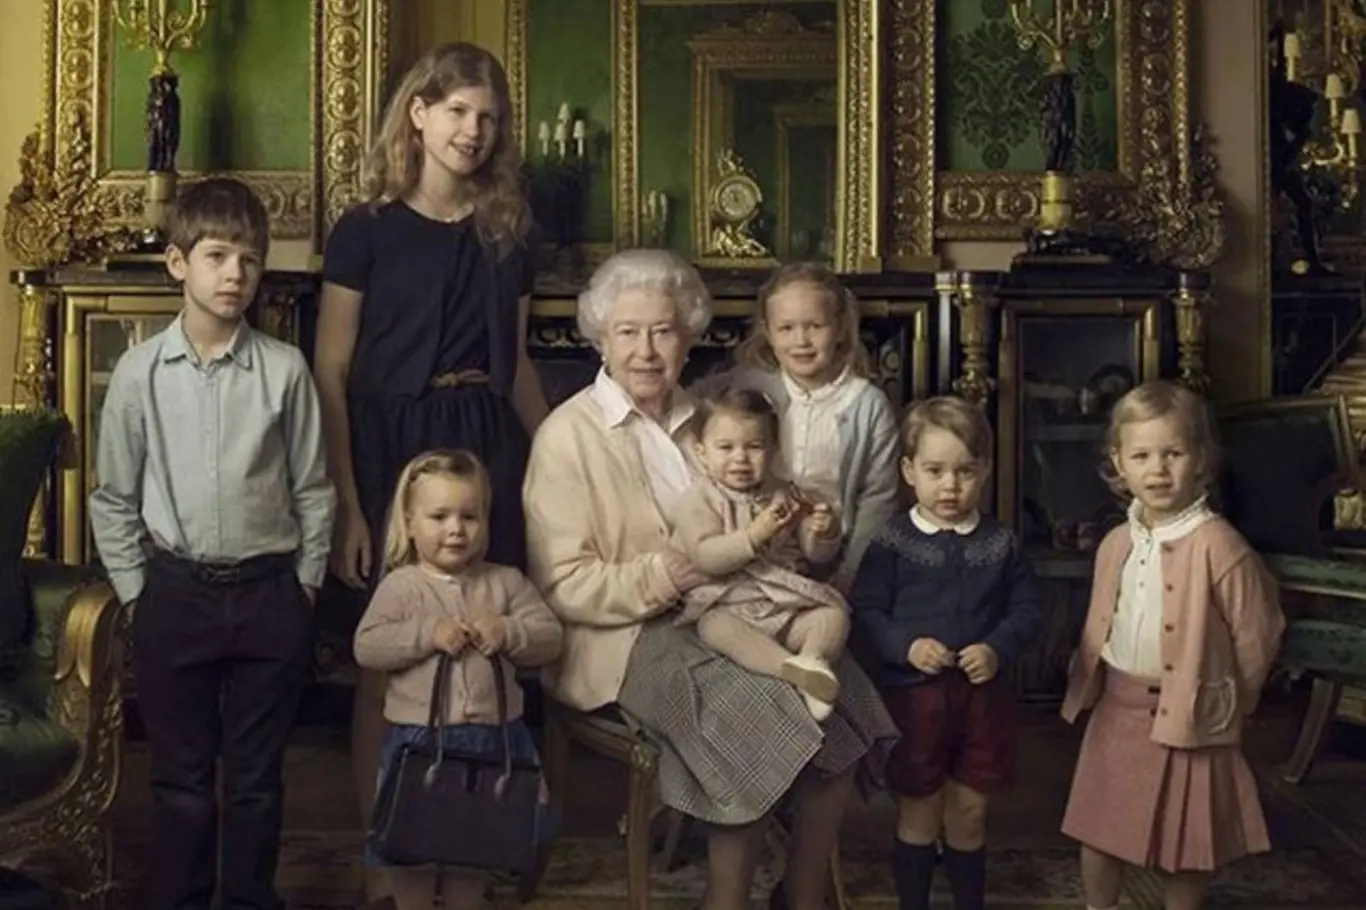 Pětadevadesátiletá královna má 12 pravnoučat, jen loni se narodili čtyři další. Na pět let starém snímku od proslulé fotografky Anne Leibovitz byla nejmladším vnoučetem princezna Charlotte (na královnině klíně), dcera prince Williama a vévodkyně Catherine